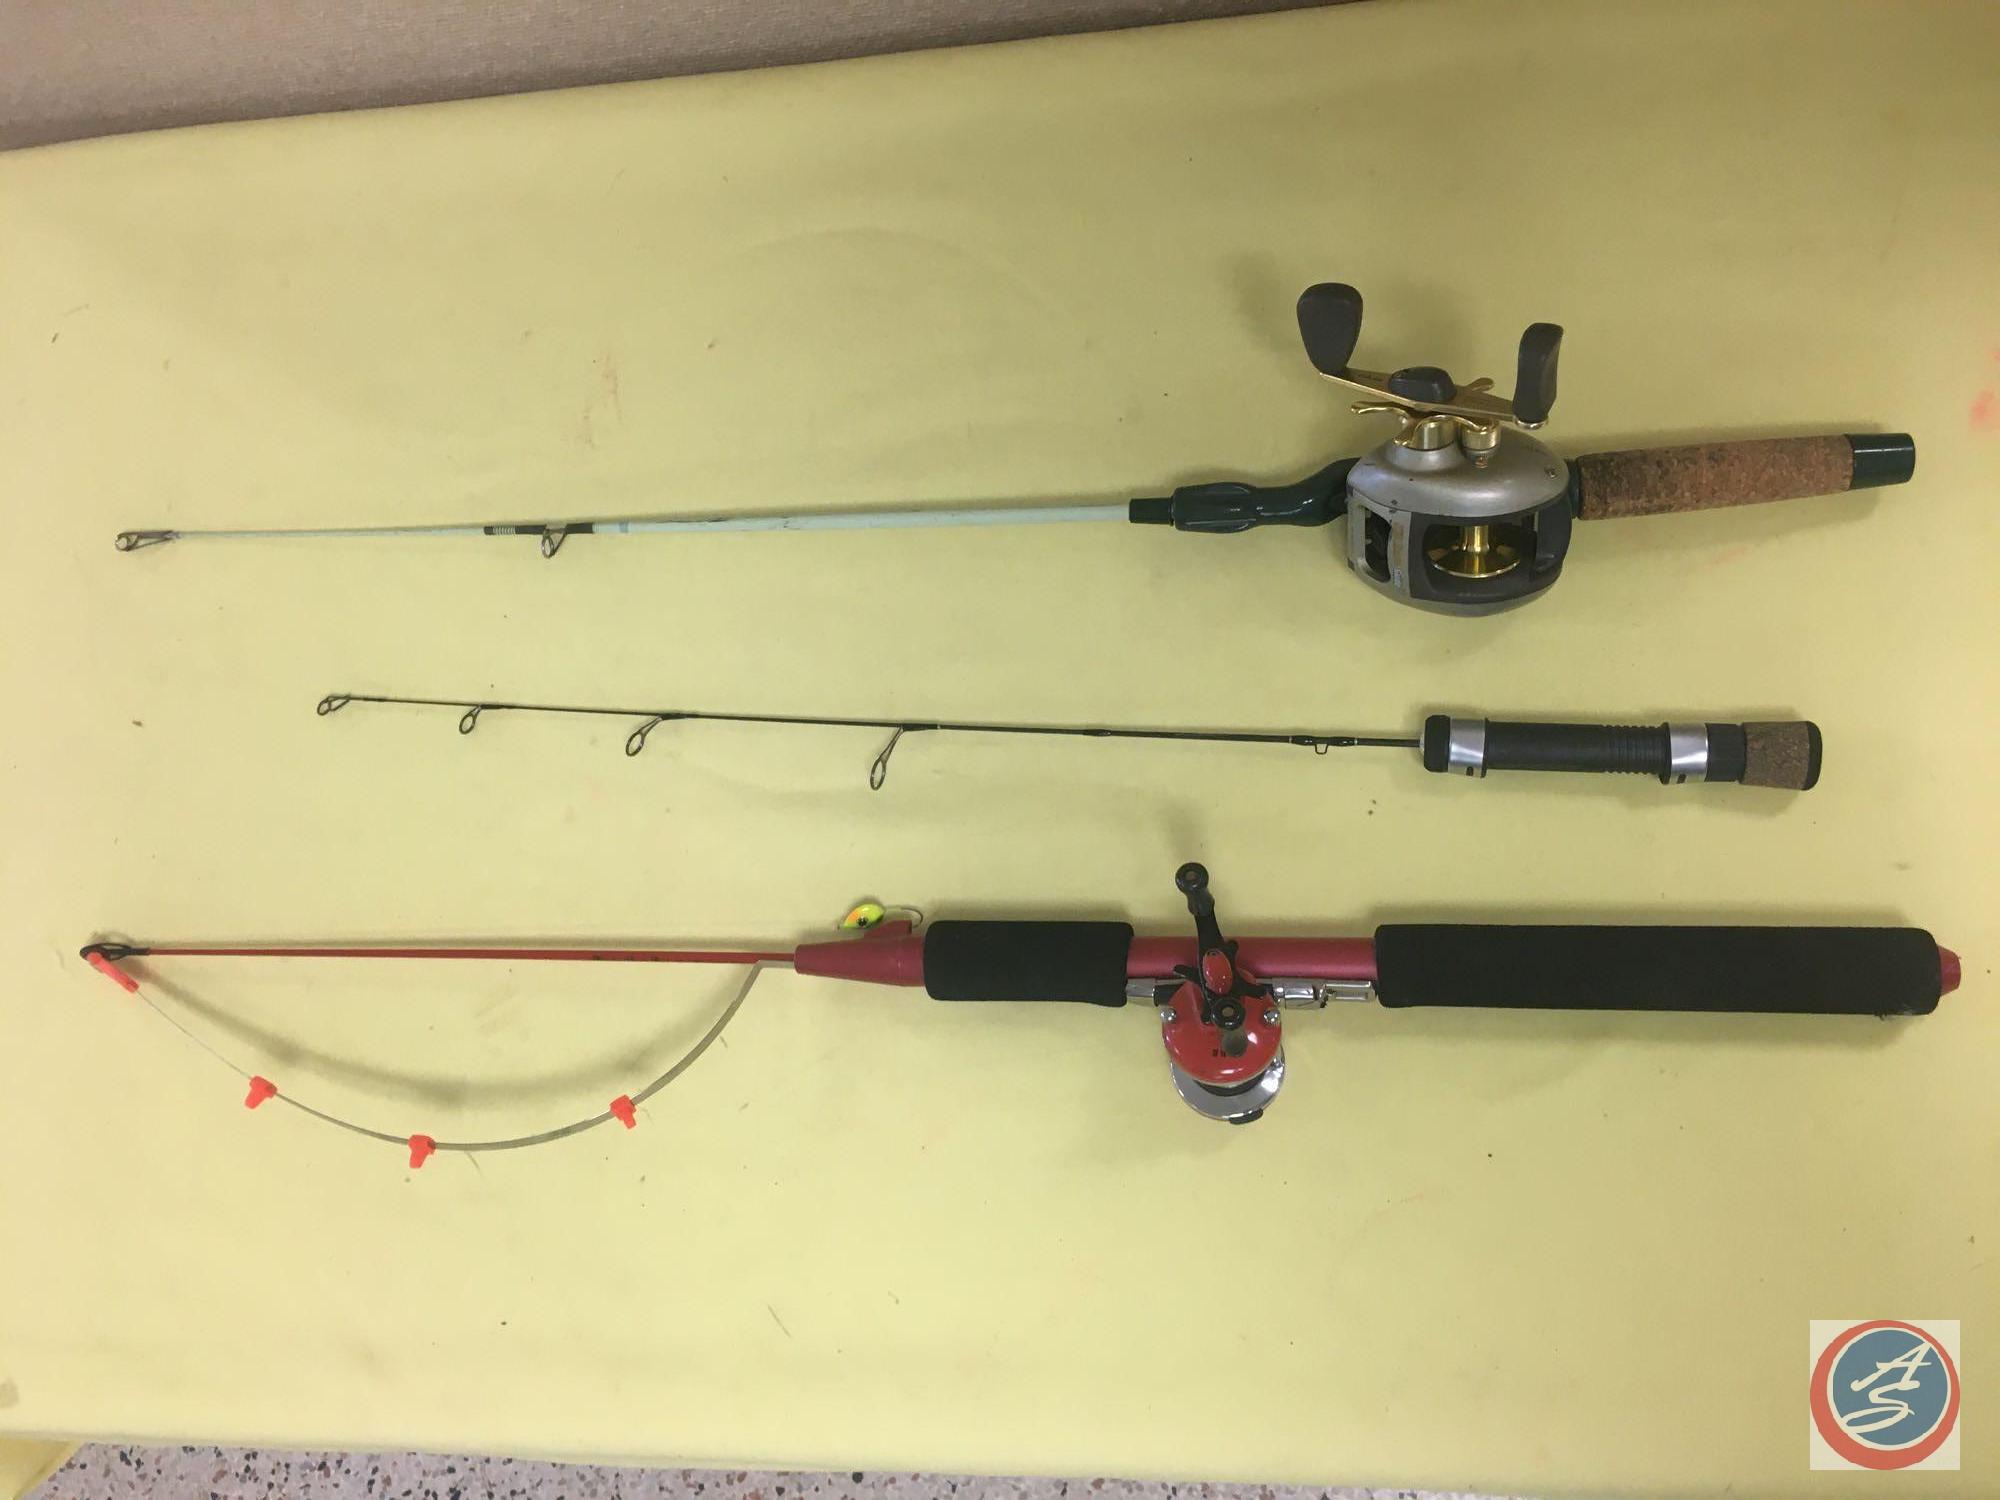 Fishing Gear for sale in Omaha, Nebraska